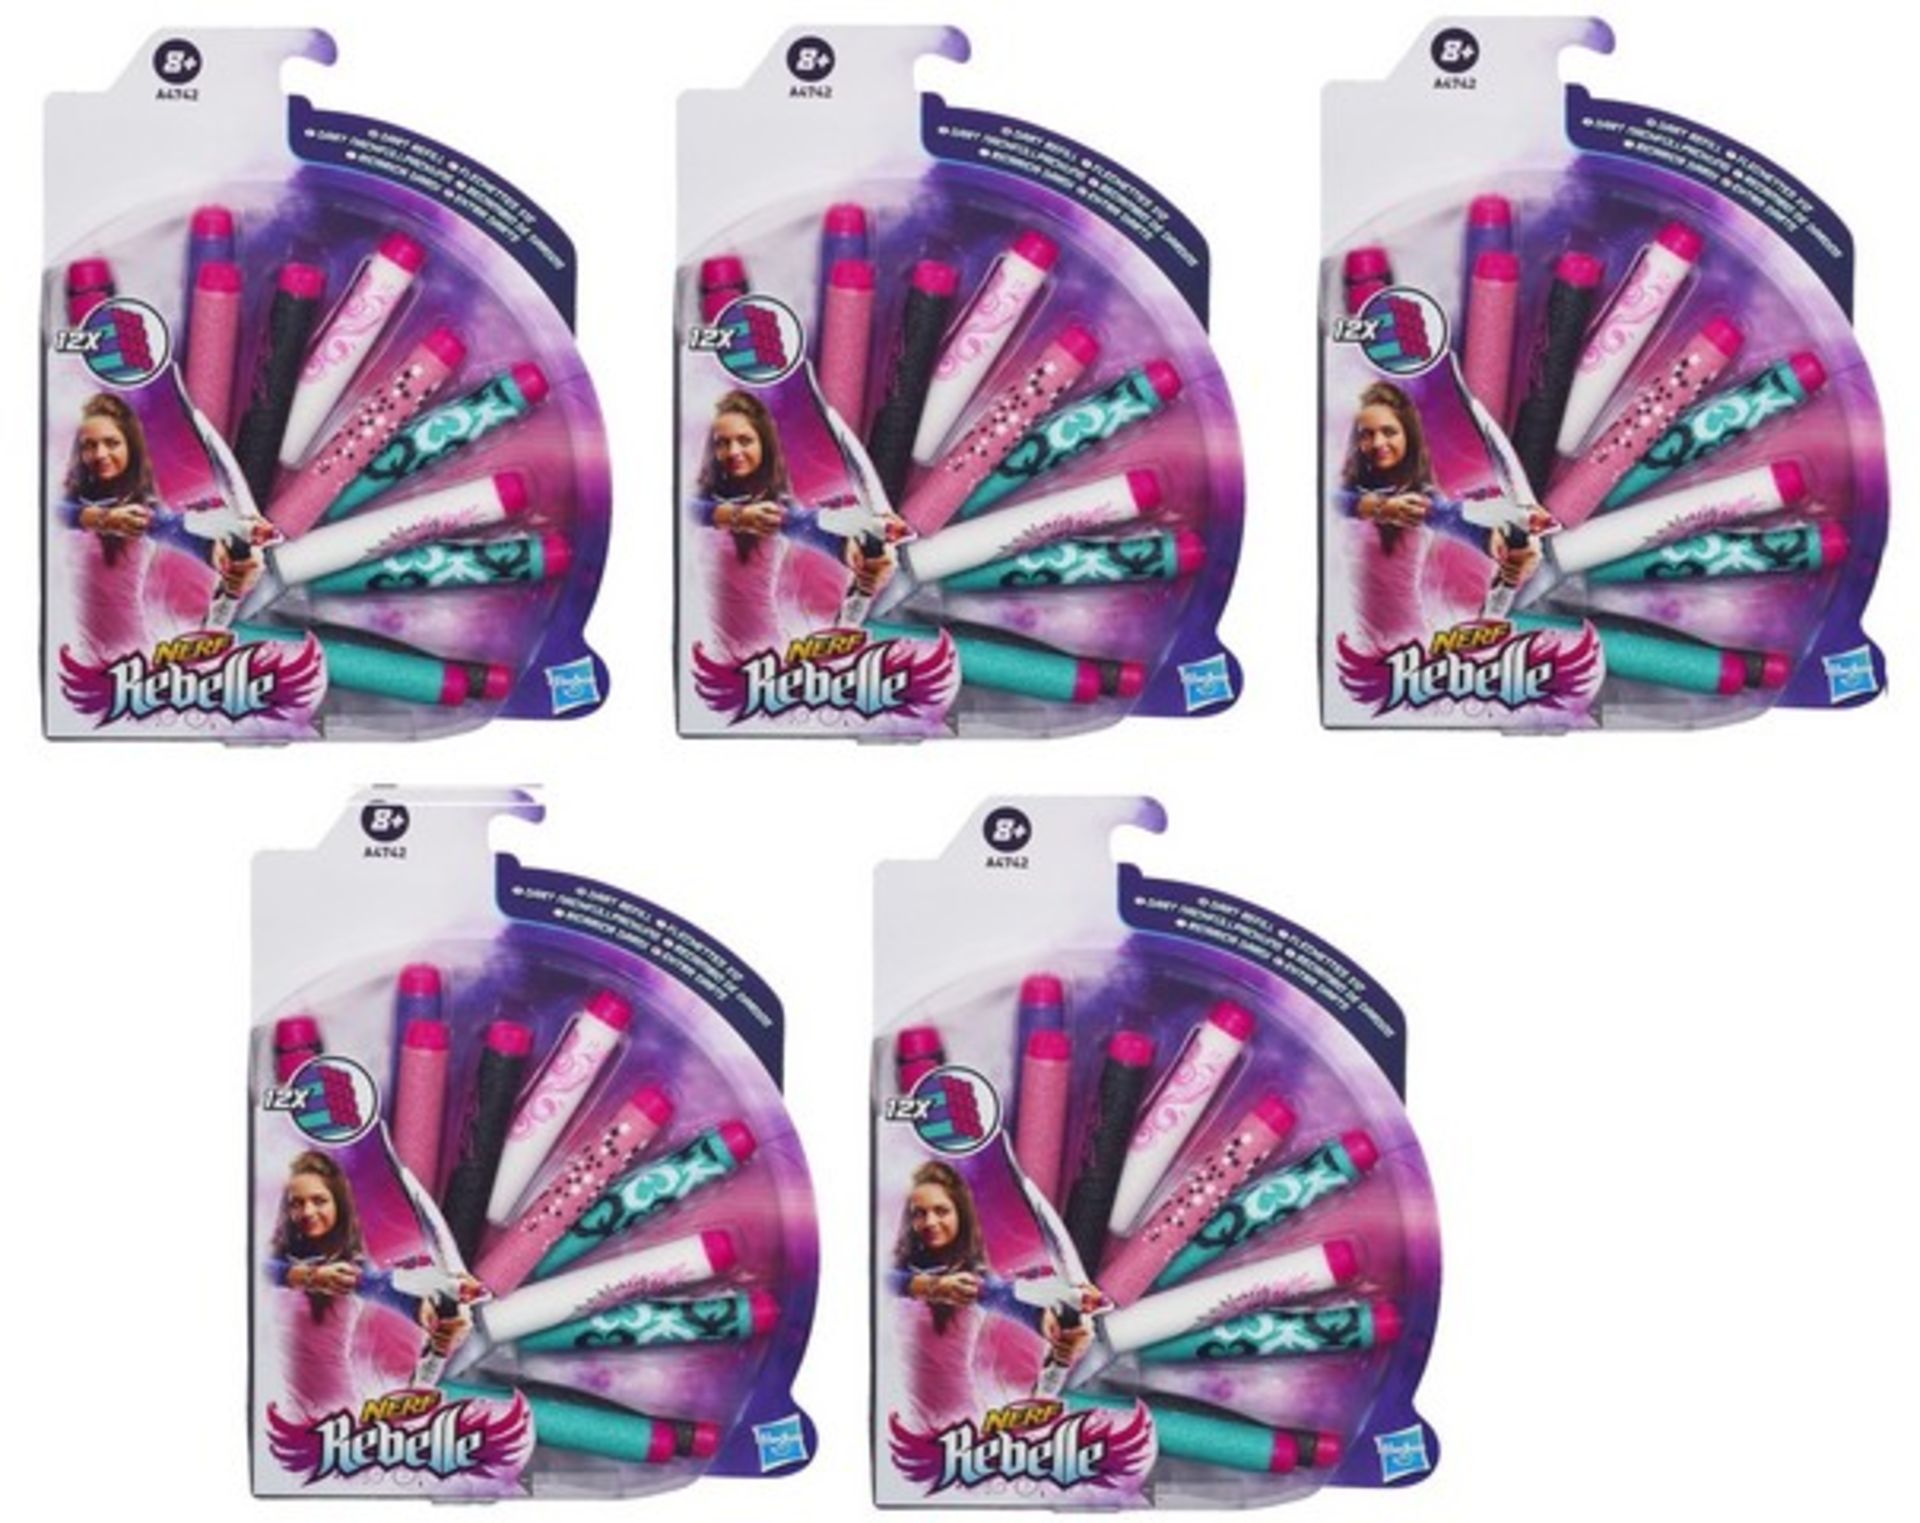 V Brand New 5 Packs Hasbro Nerf Rebelle 12 x Dart Refill - Amazon Price £37.85